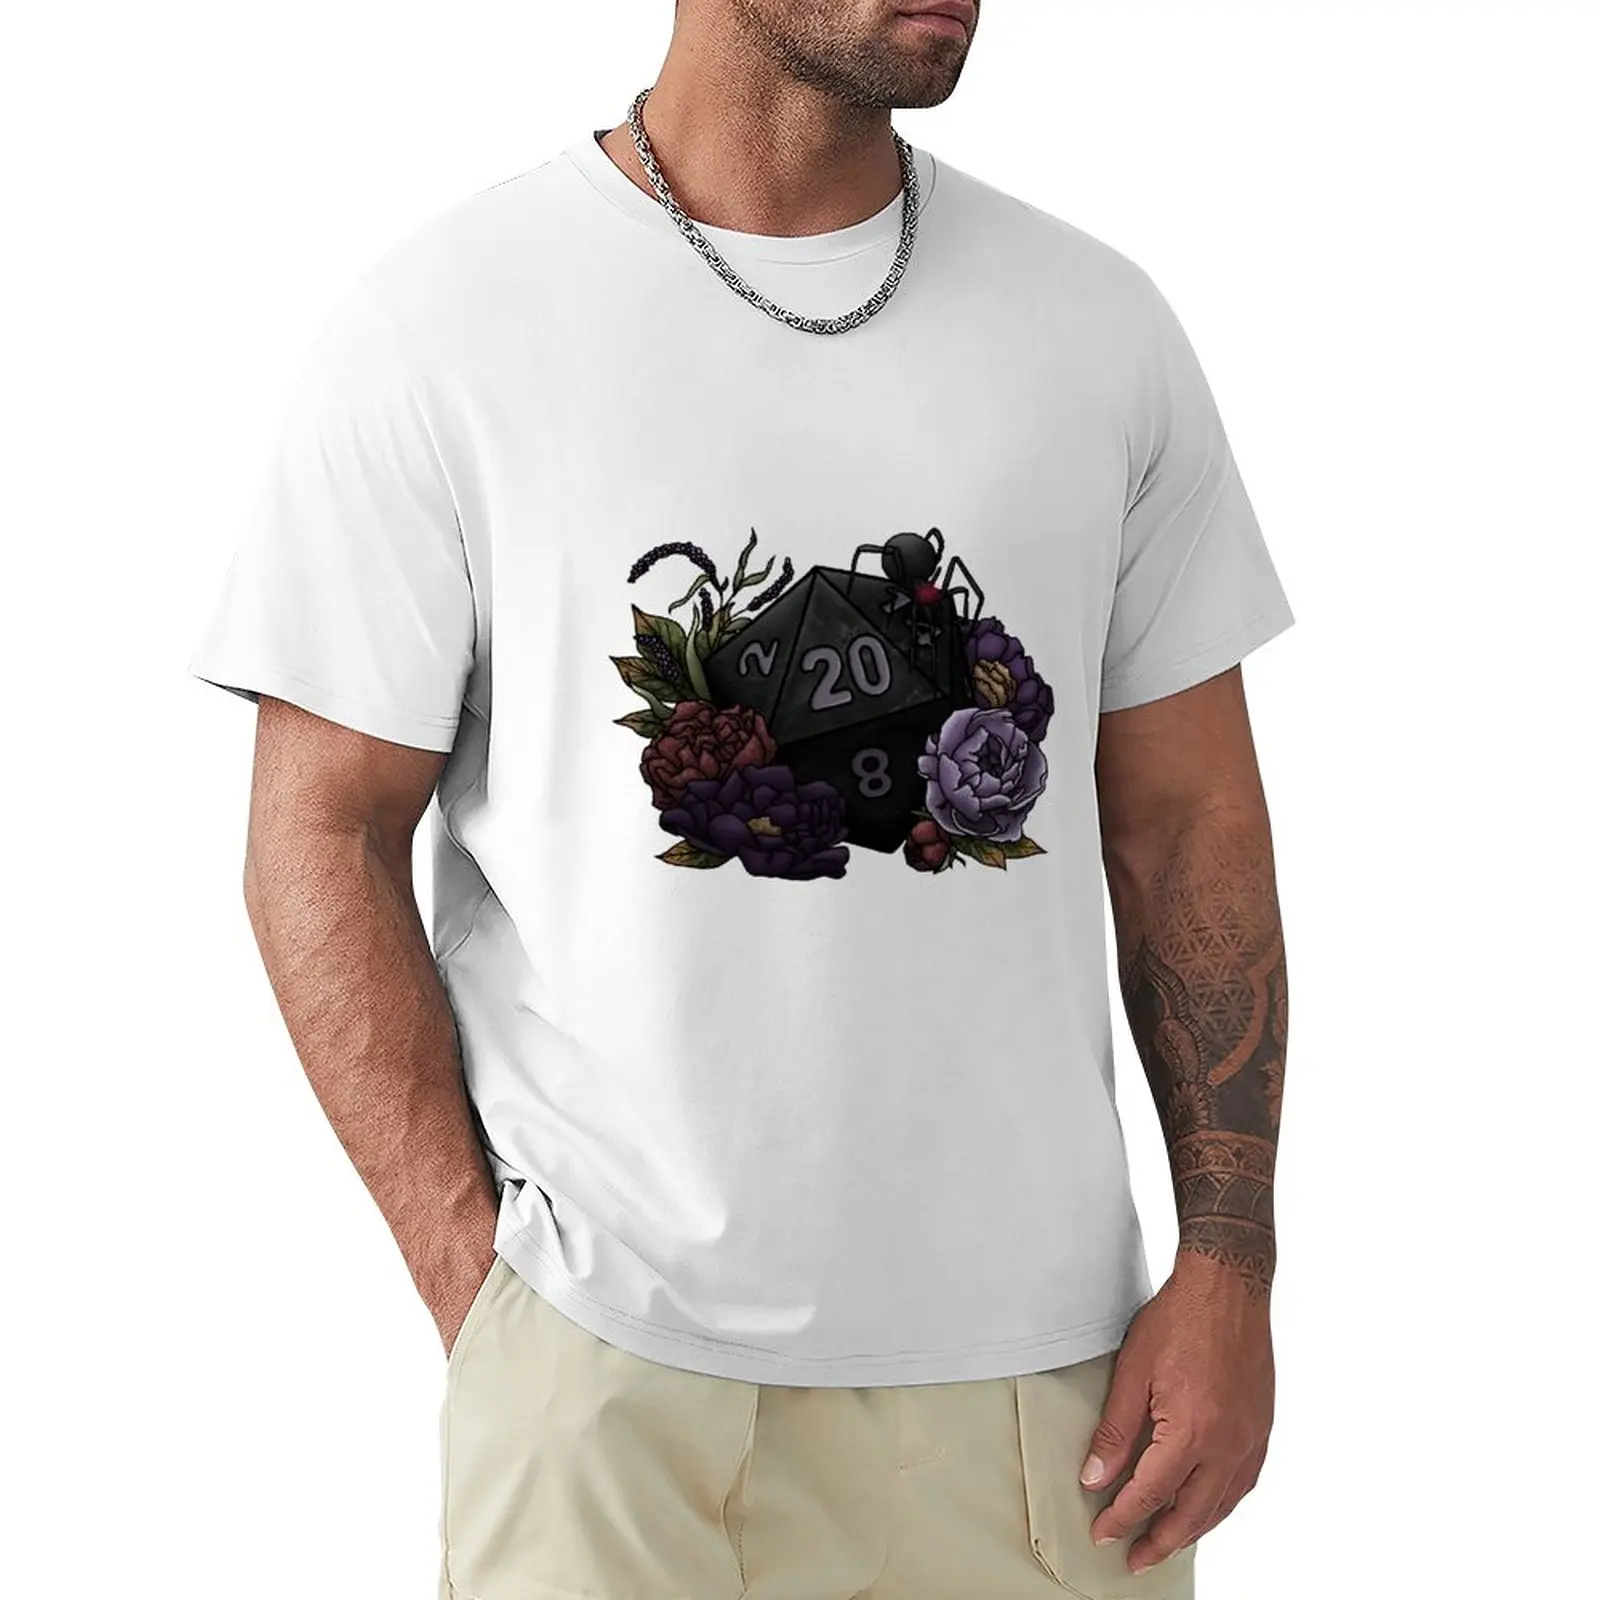 Drow D20 - футболка с настольными игровыми кубиками, эстетичная одежда, одежда kawaii, футболка оверсайз для мужчин